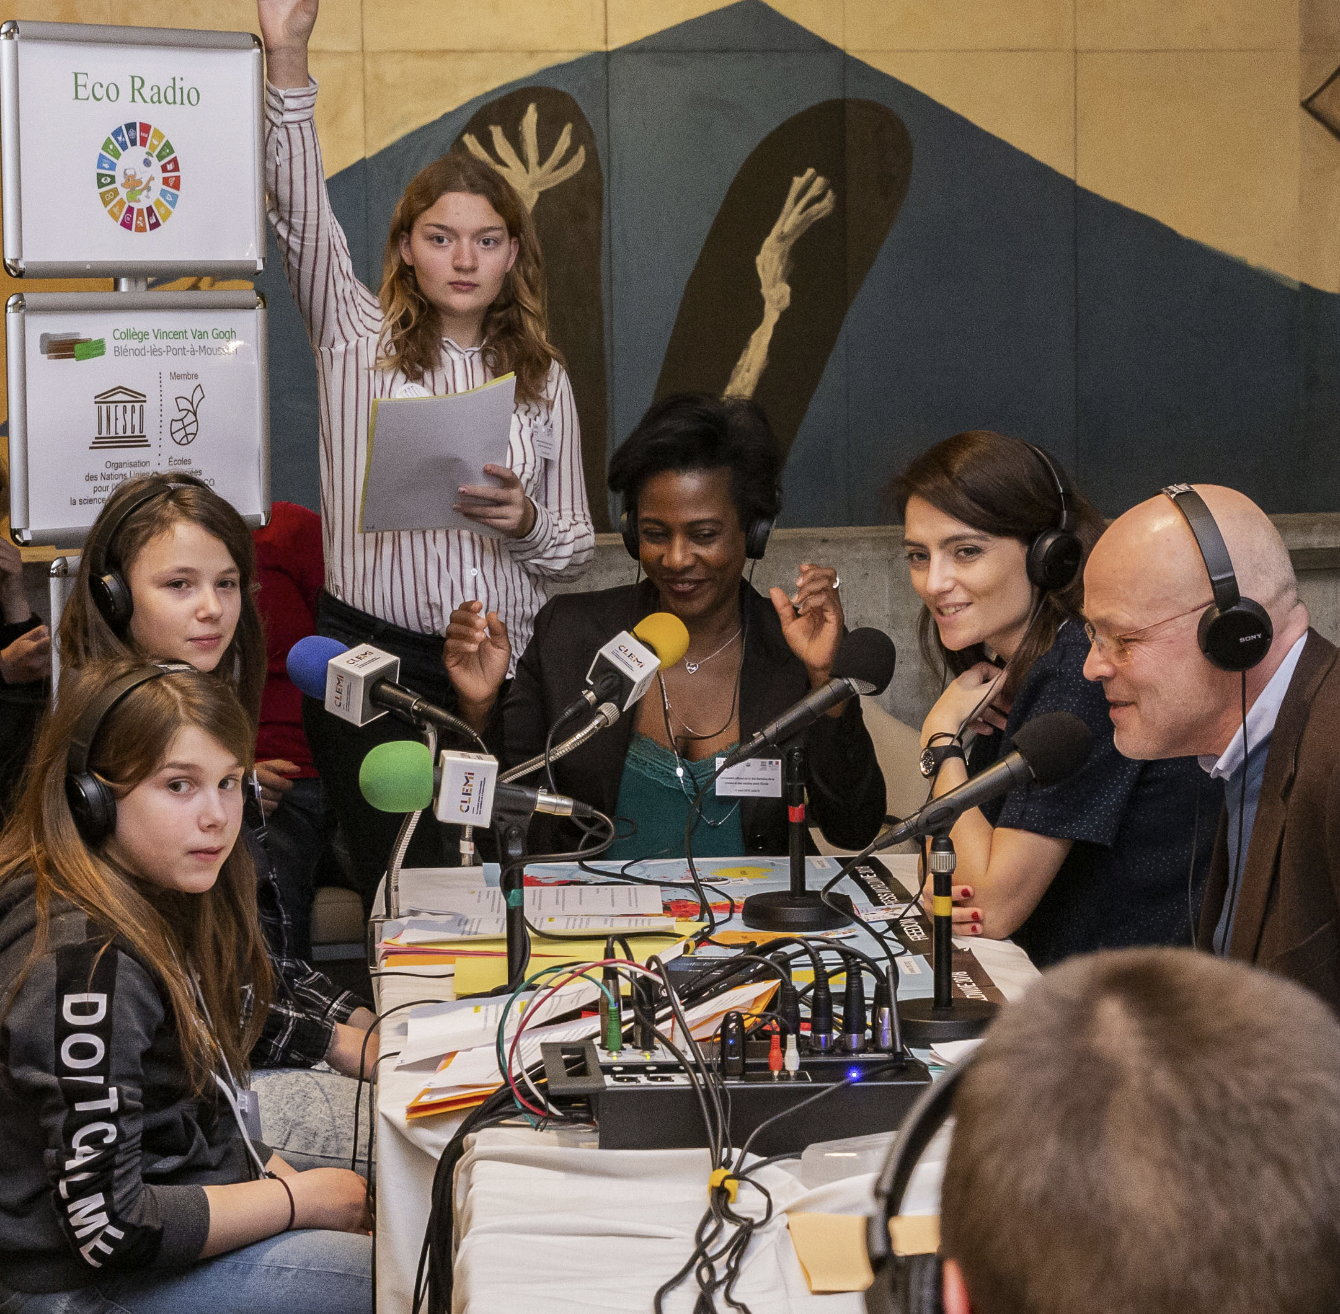 L'atelier de webradio scolaire (Eco Radio) avec des élèves du collège Van-Gogh (académie de Nancy-Metz) et leur enseignant Olivier Stock interviewant des journalistes dans le cadre du lancement de la Semaine de la presse et des médias dans l'École 2019 à l'UNESCO © CLEMI Élisa Felz